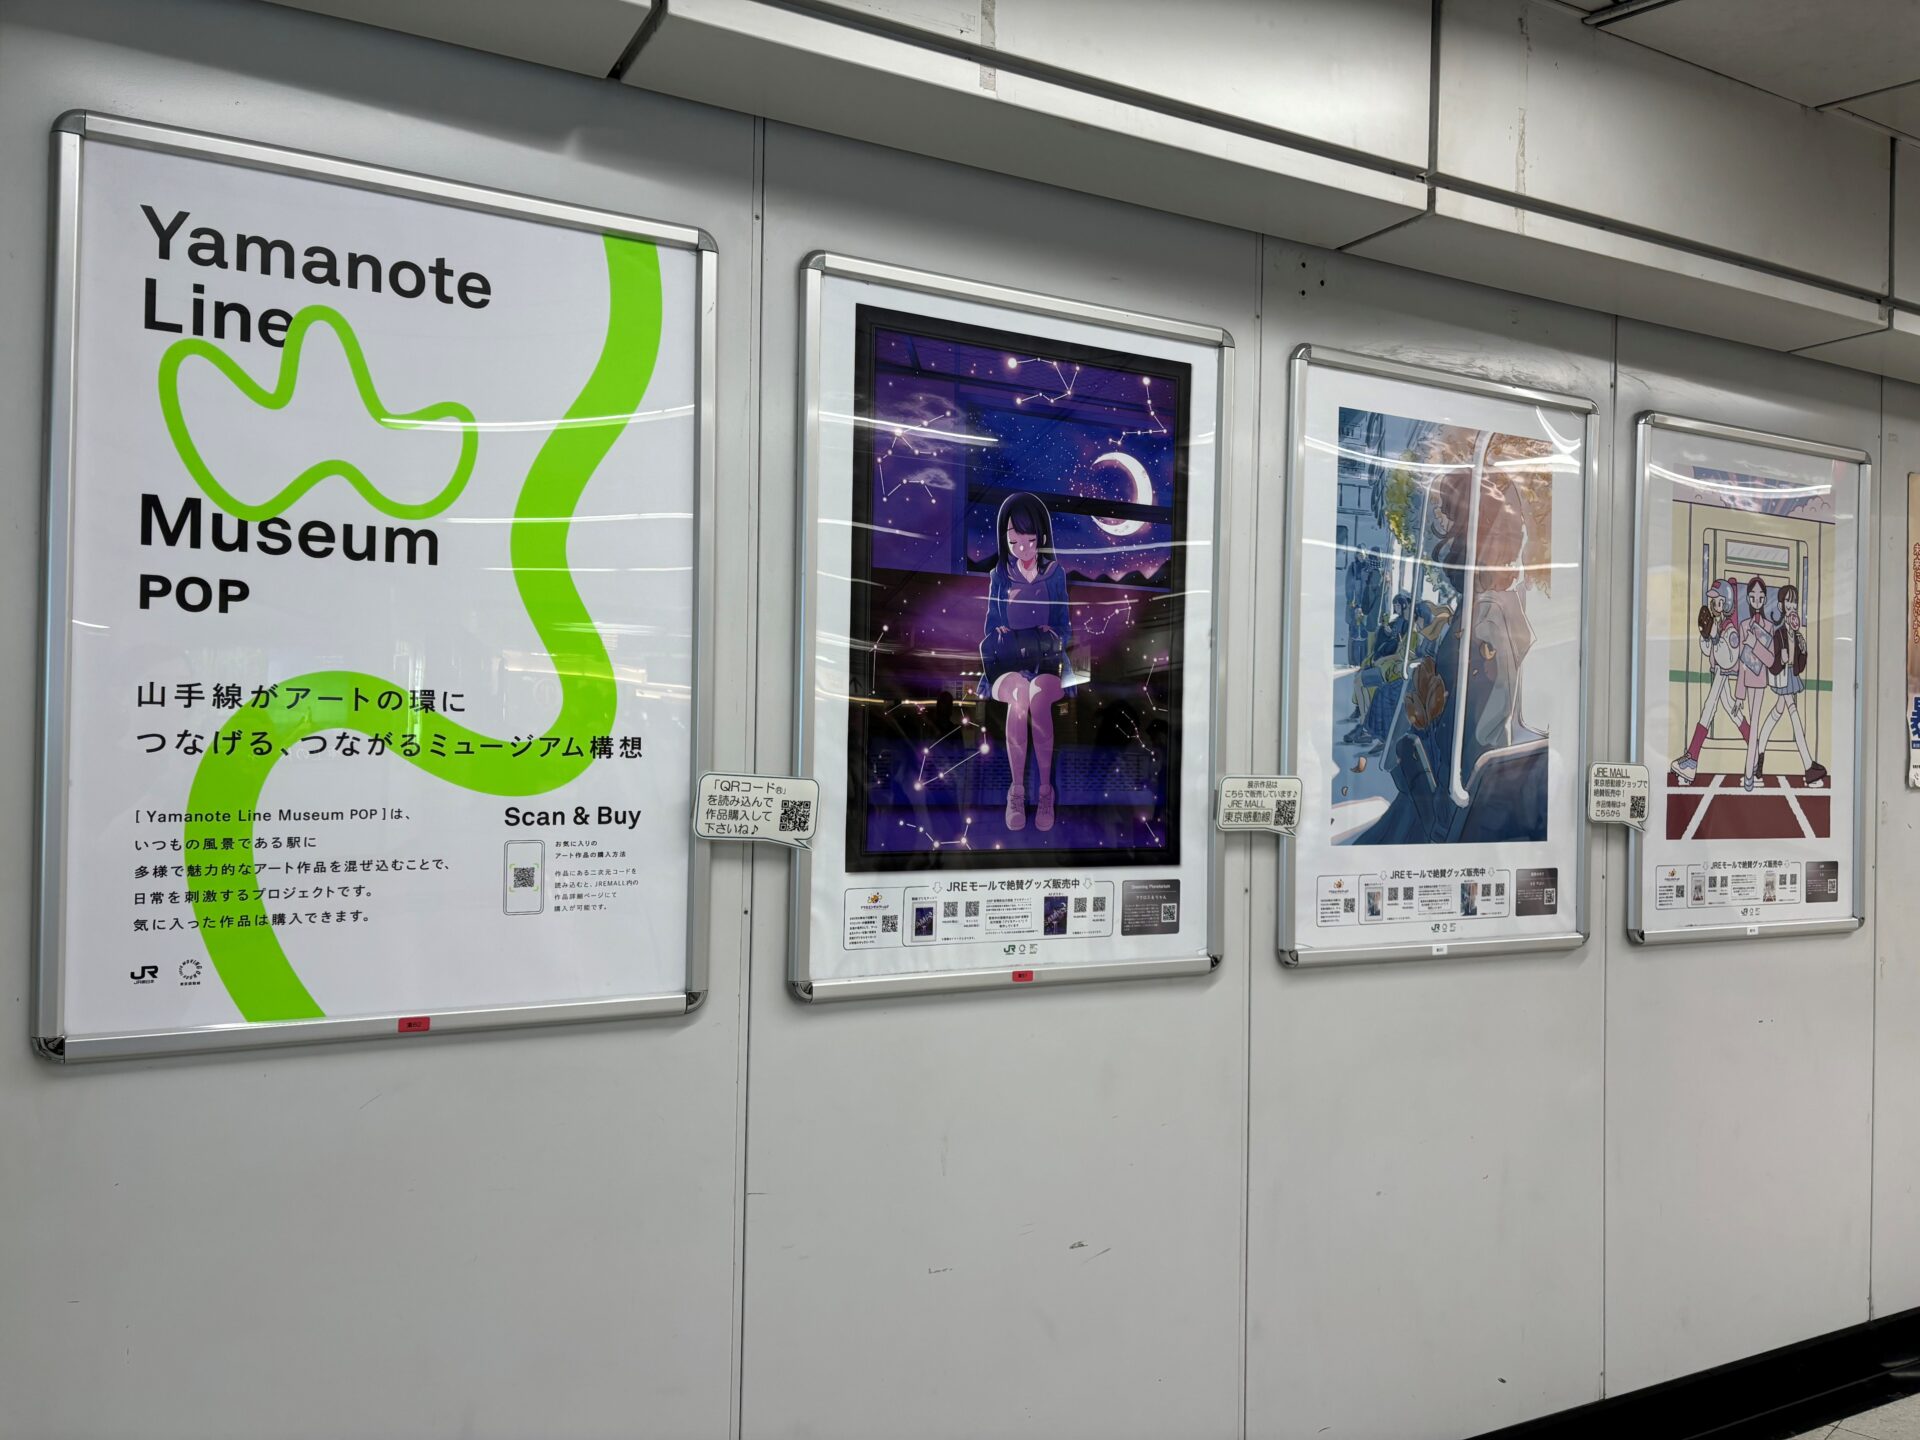 【第2弾】Yamanote Line Museum POPの作品の展示箇所を入れ替え